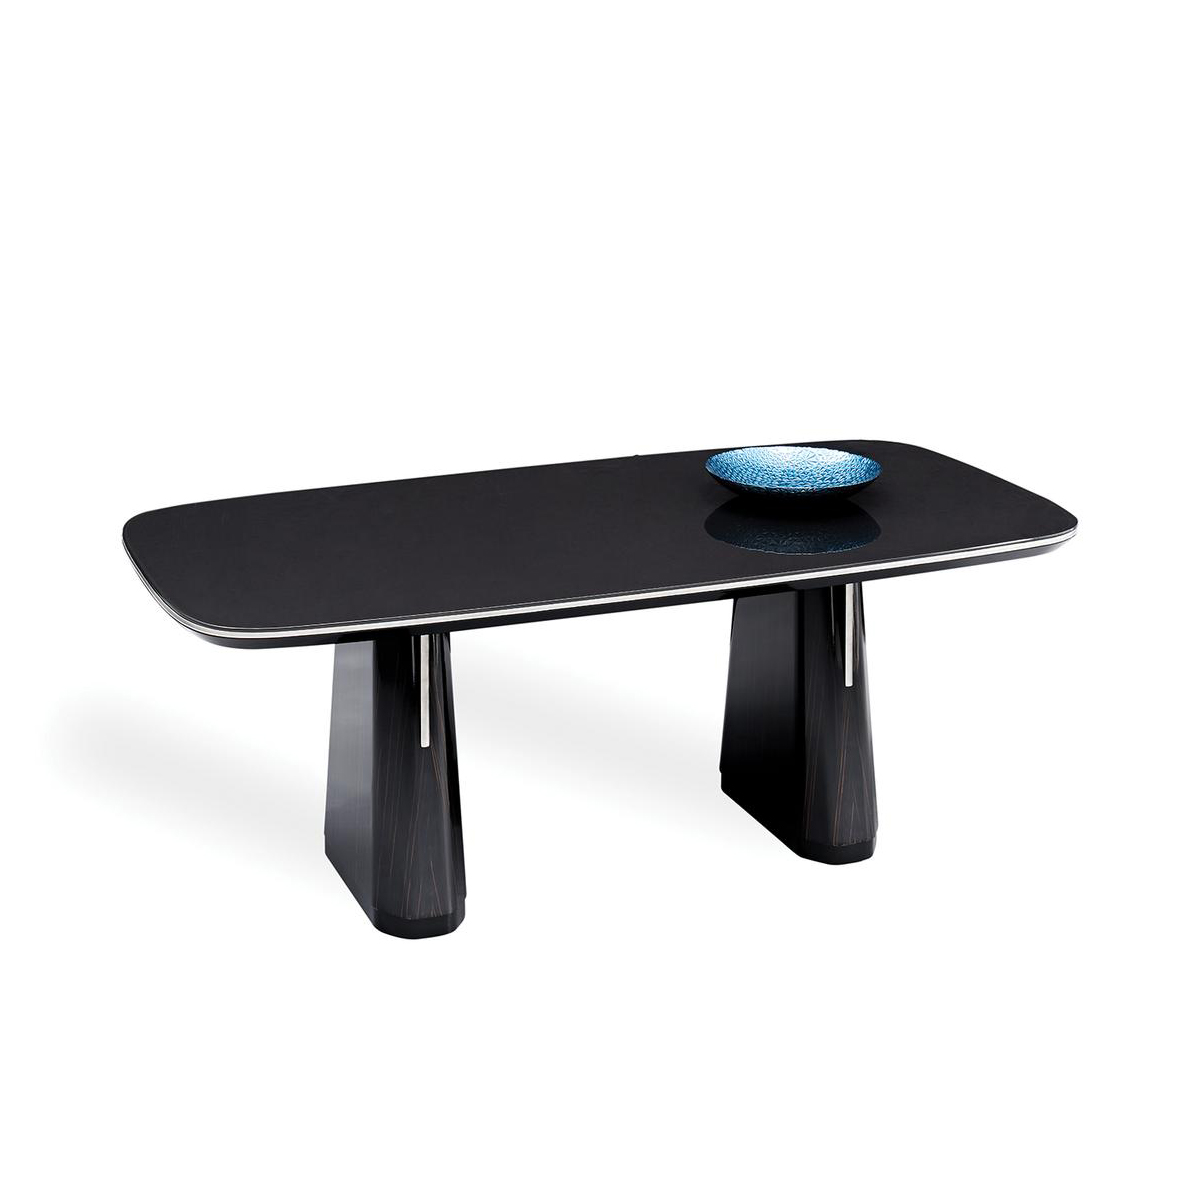 Стол обеденный Enza Home Valdera, прямоугольный, размер 200х100х76 см, стеклянная поверхность55555000000040